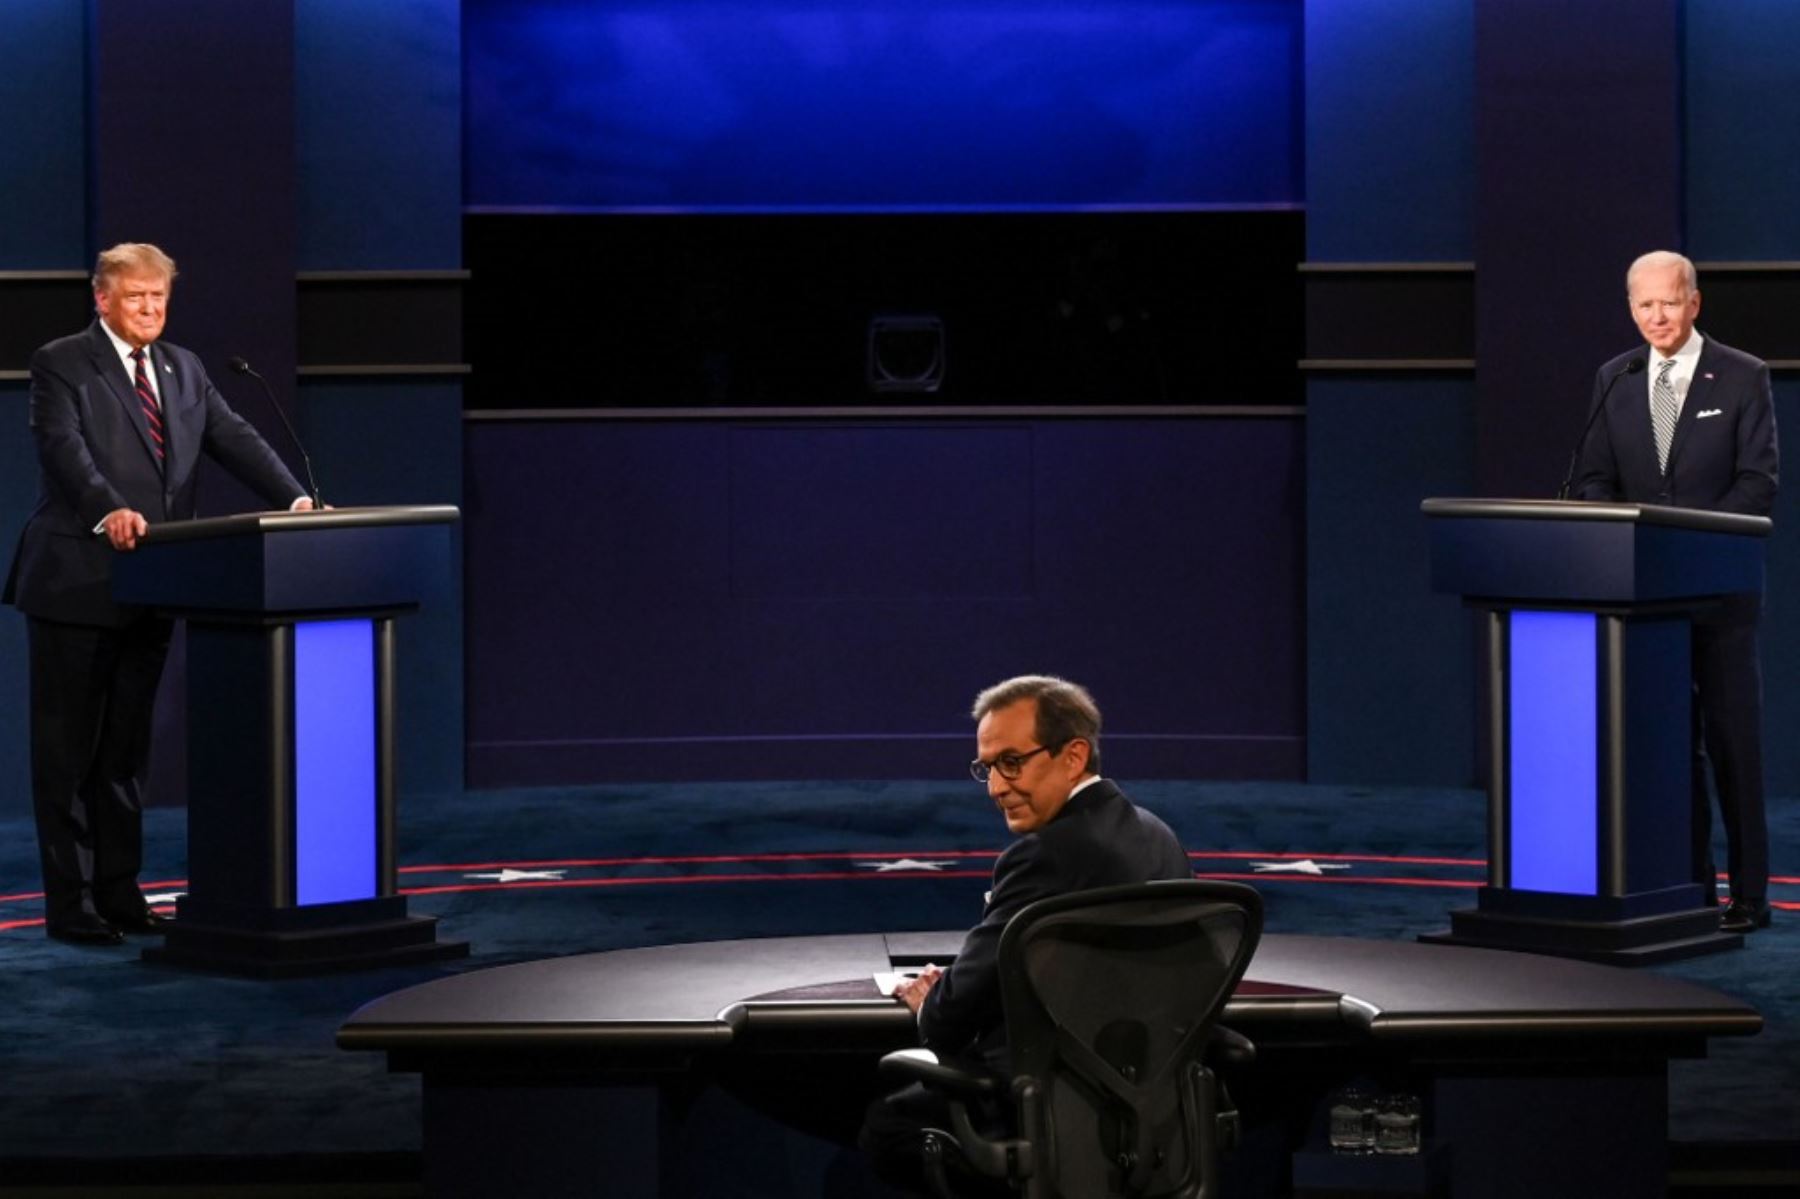 El presidente Donald Trump y el candidato demócrata Joe Biden participan en su primer debate presidencial. AFP